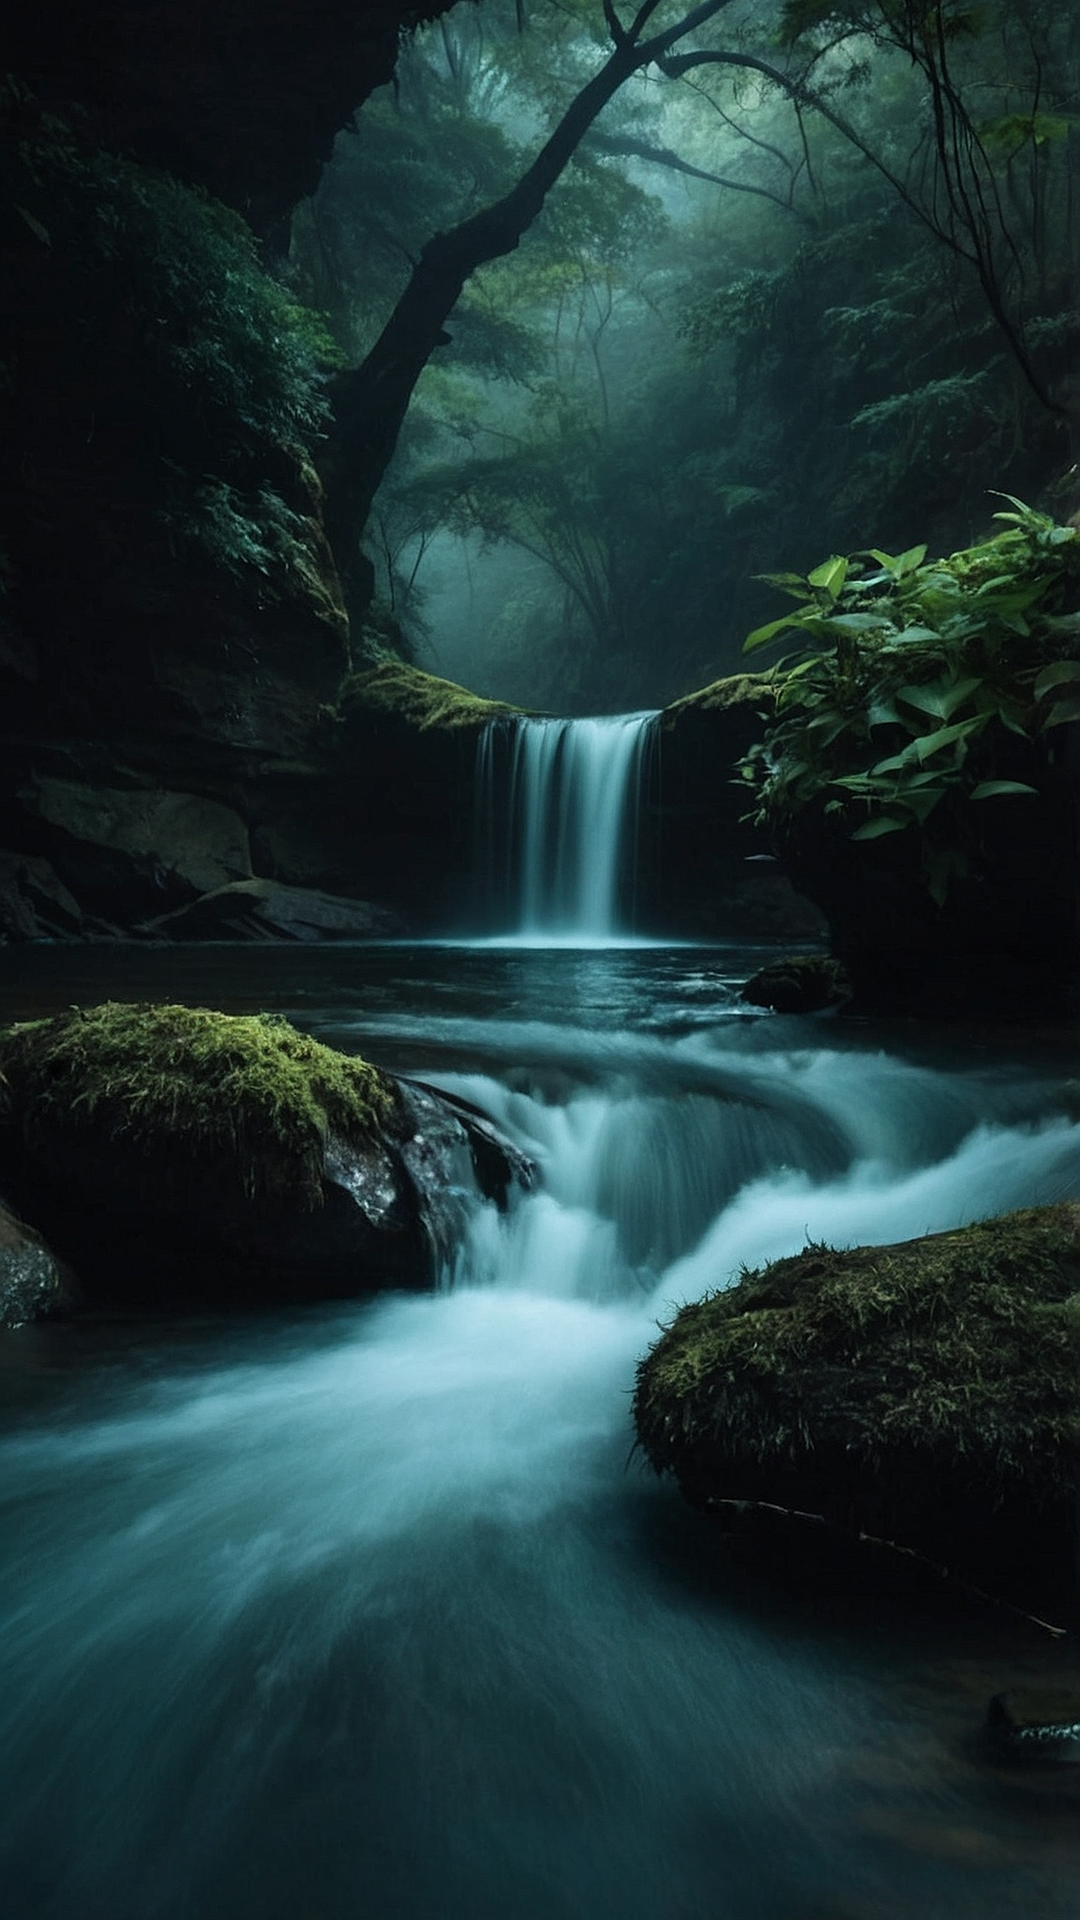 Enchanted Falls: Enchanting Waterfall Wallpaper Styles